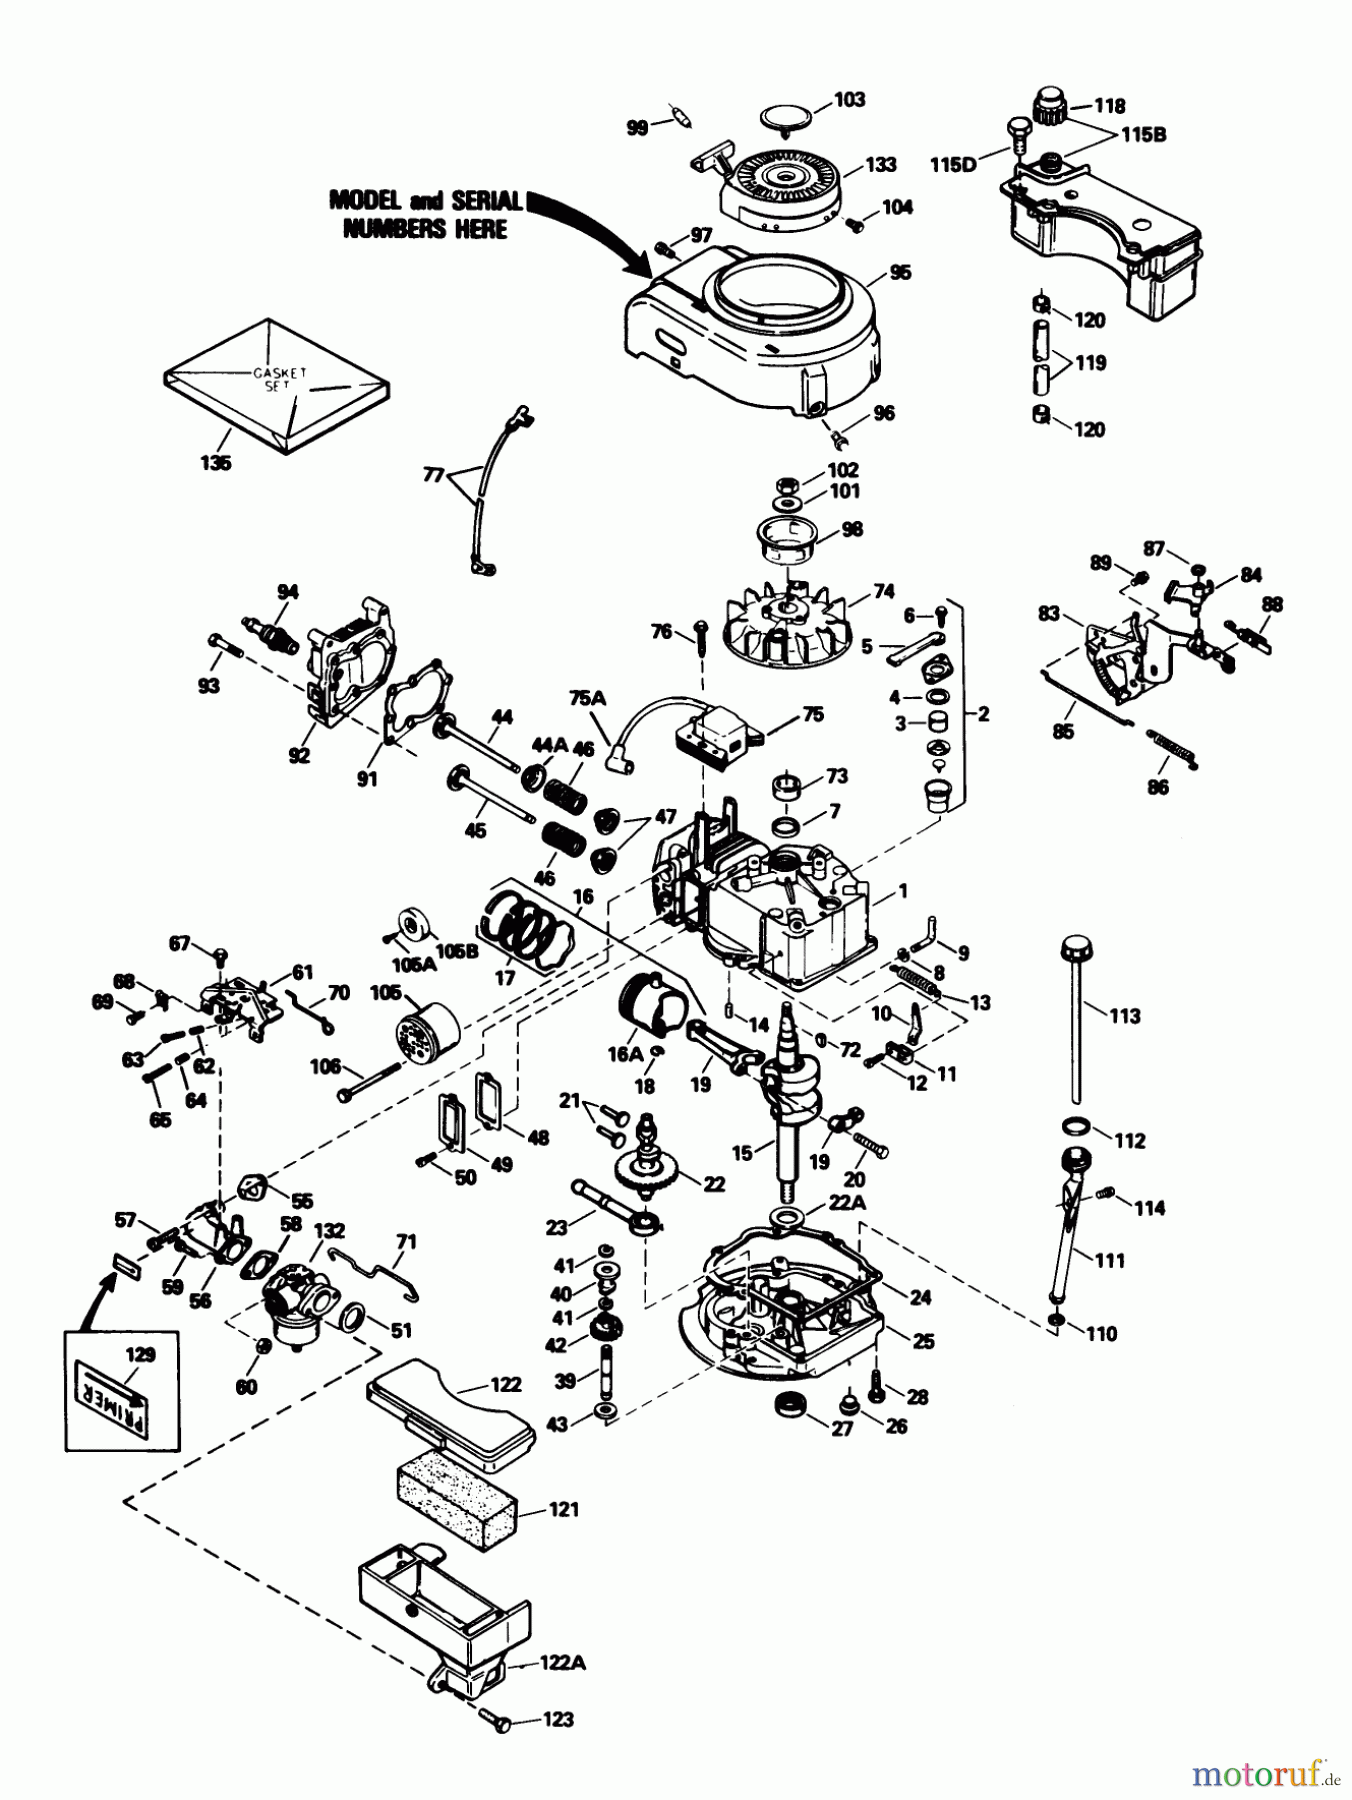  Toro Neu Mowers, Walk-Behind Seite 1 20692C - Toro Lawnmower, 1989 (9000001-9999999) ENGINE TECUMSEH MODEL NO. TVS100-44020B